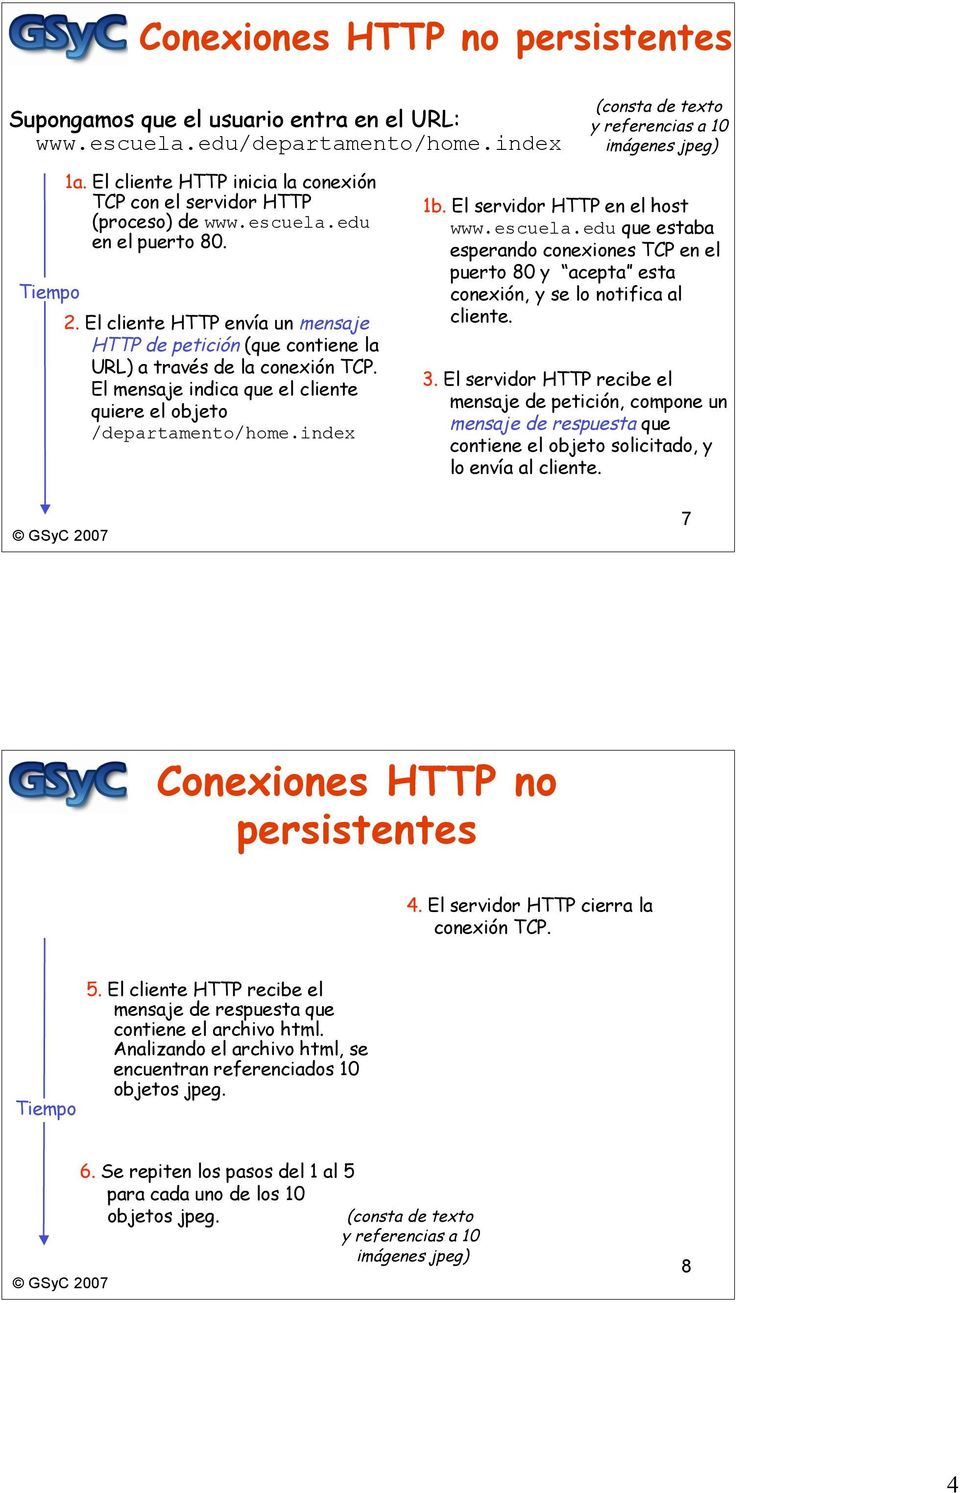 El cliente HTTP envía un mensaje HTTP de petición (que contiene la URL) a través de la conexión TCP. El mensaje indica que el cliente quiere el objeto /departamento/home.index 1b.